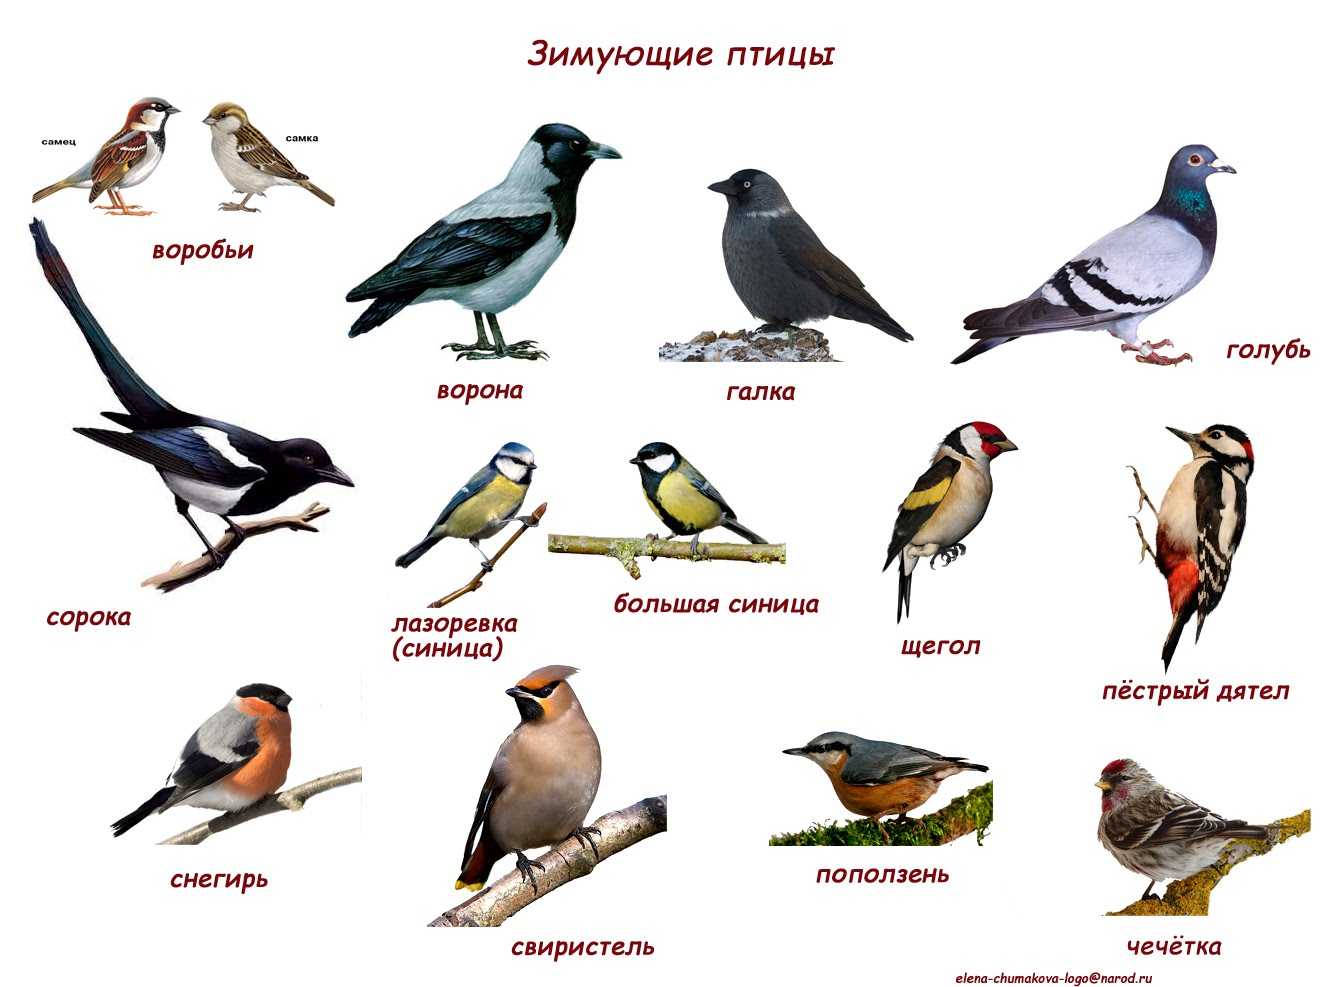 Птицы ленинградской области: фото, названия и описания (каталог)